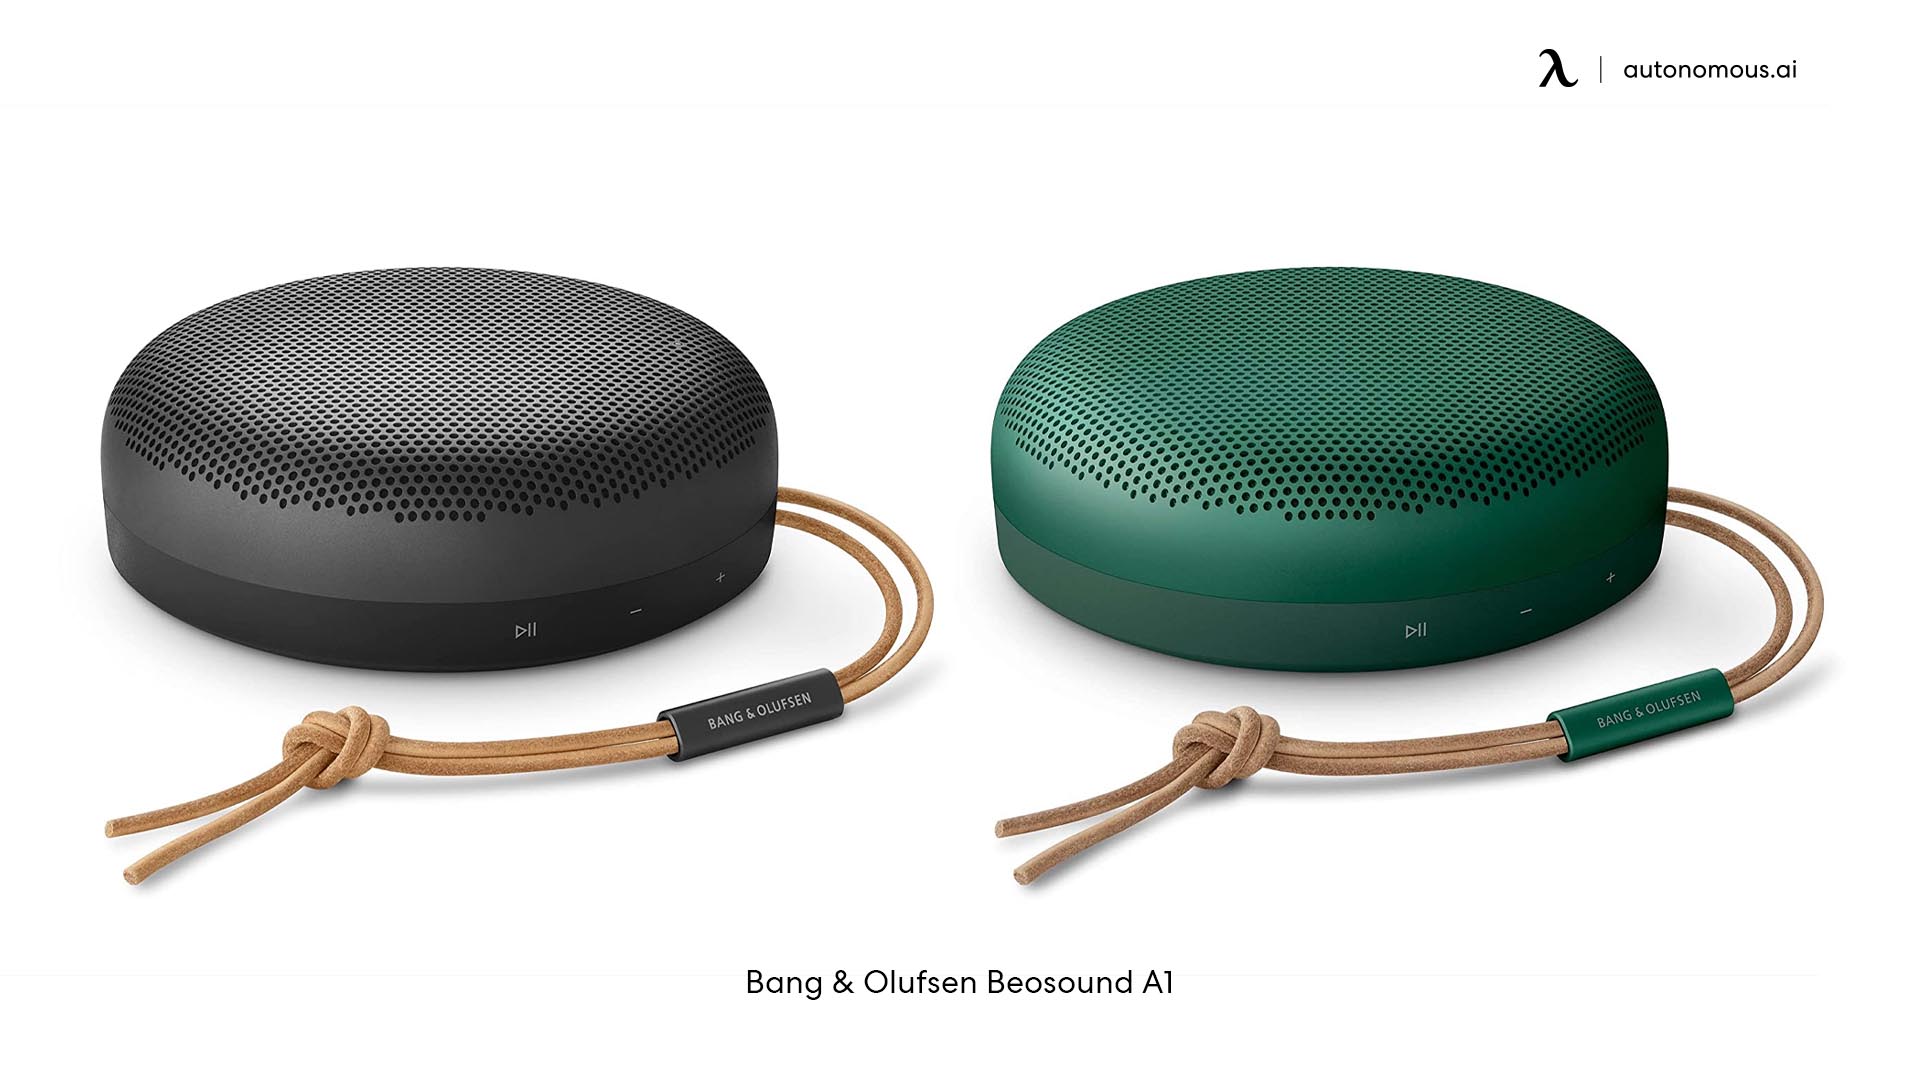 Bang & Olufsen Beosound A1 spider Bluetooth speaker